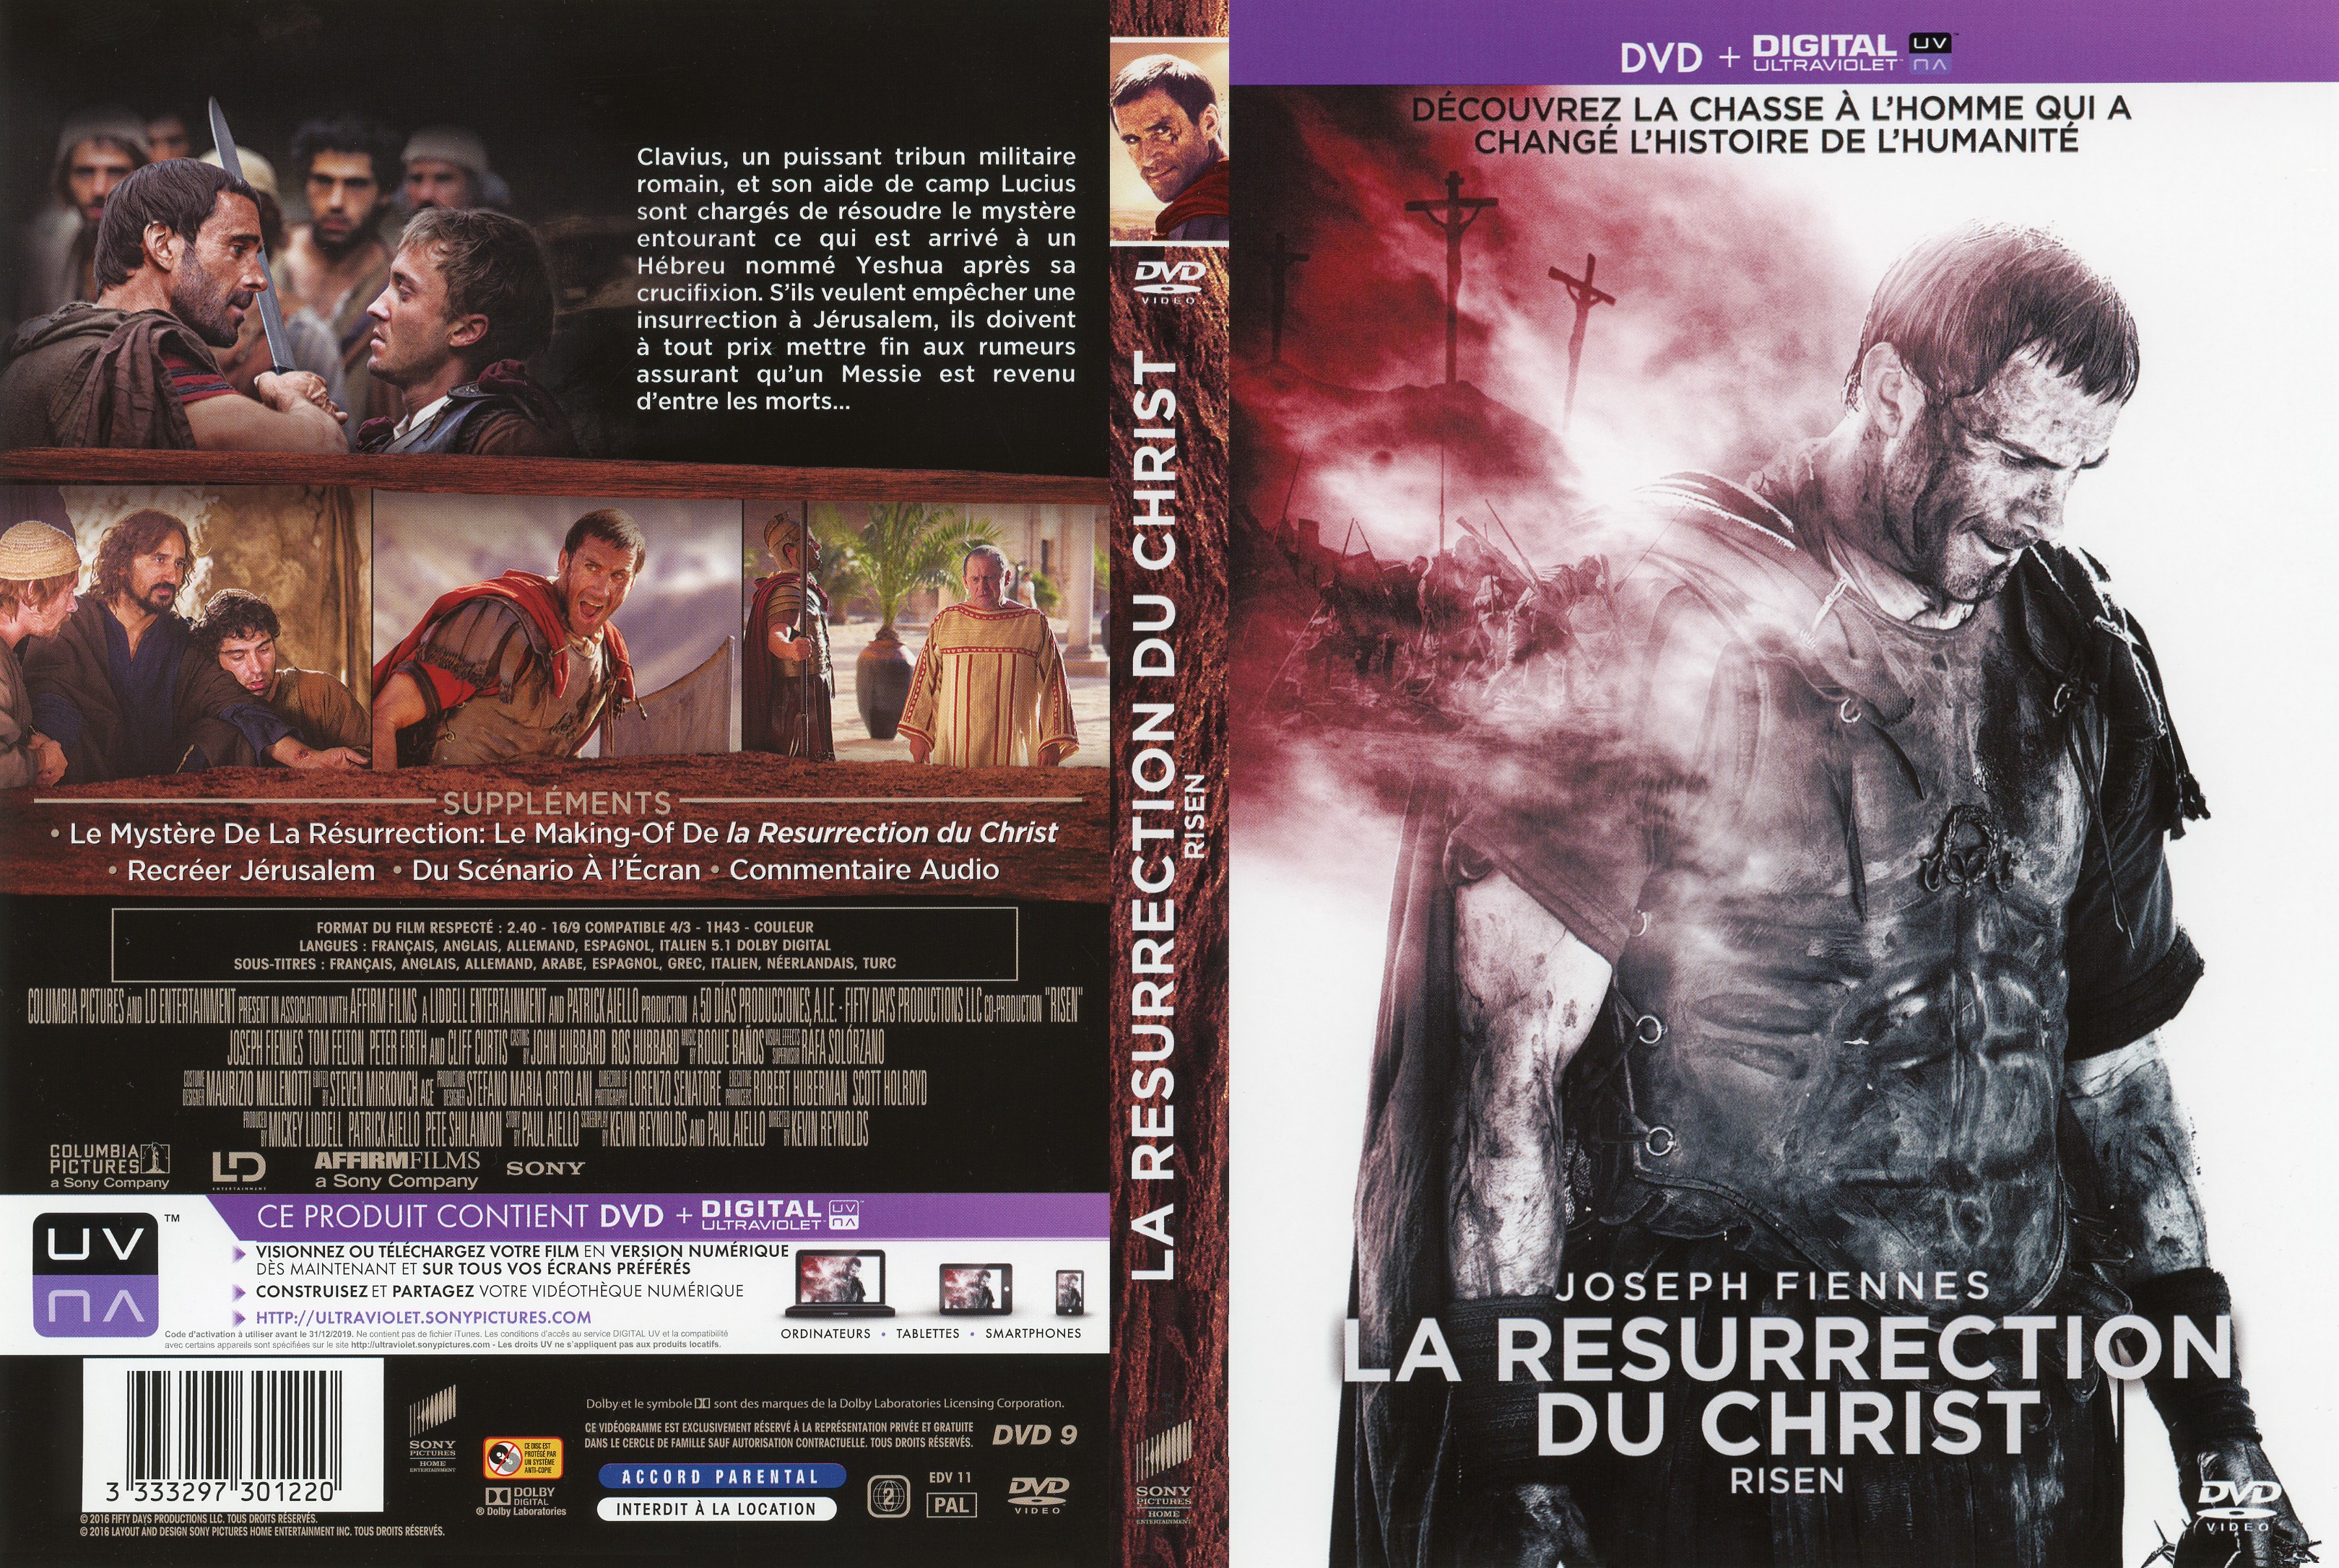 Jaquette Dvd De La Resurrection Du Christ Cin Ma Passion